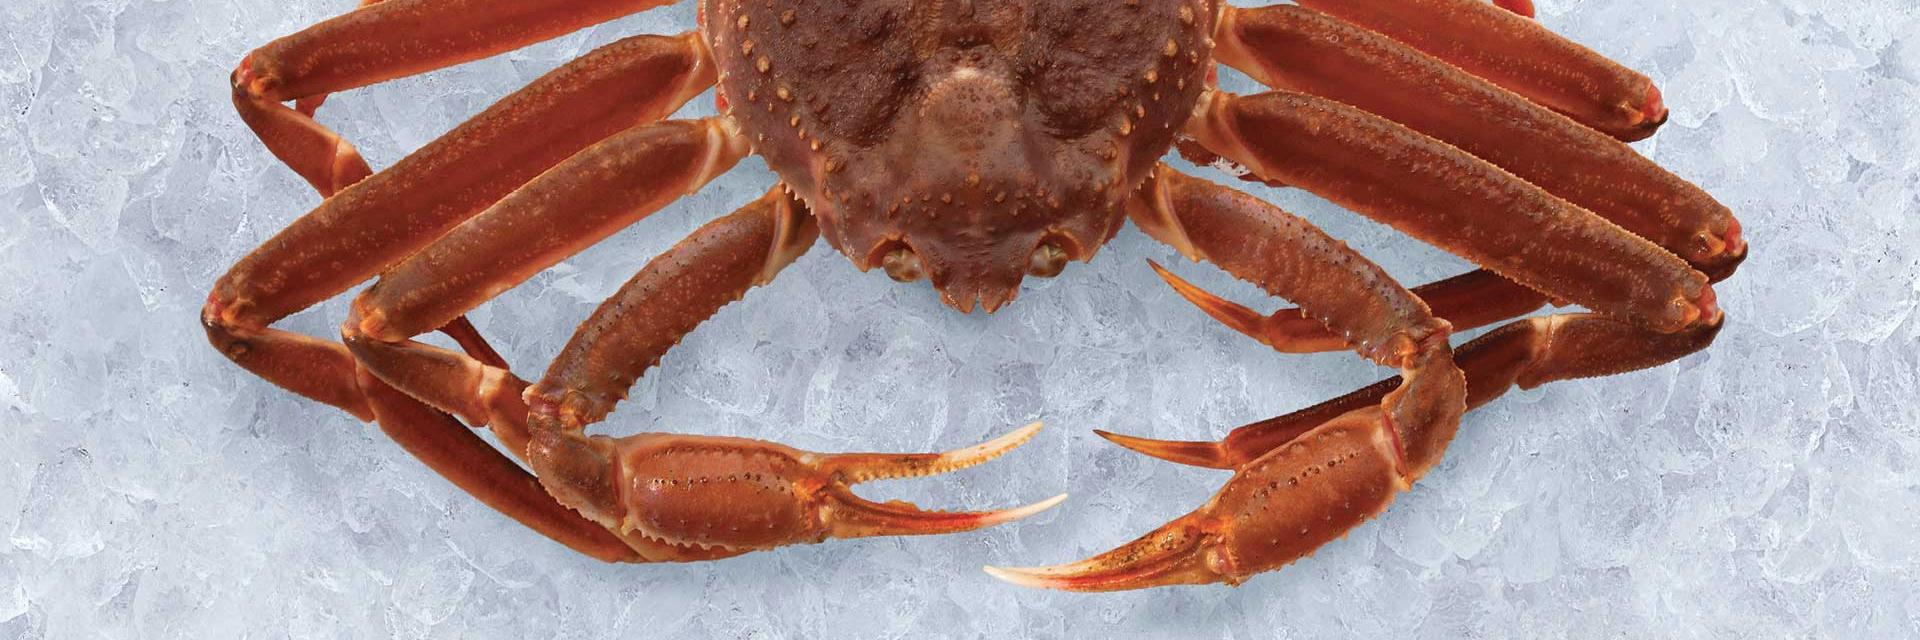 Nova Scotia Snow Crab